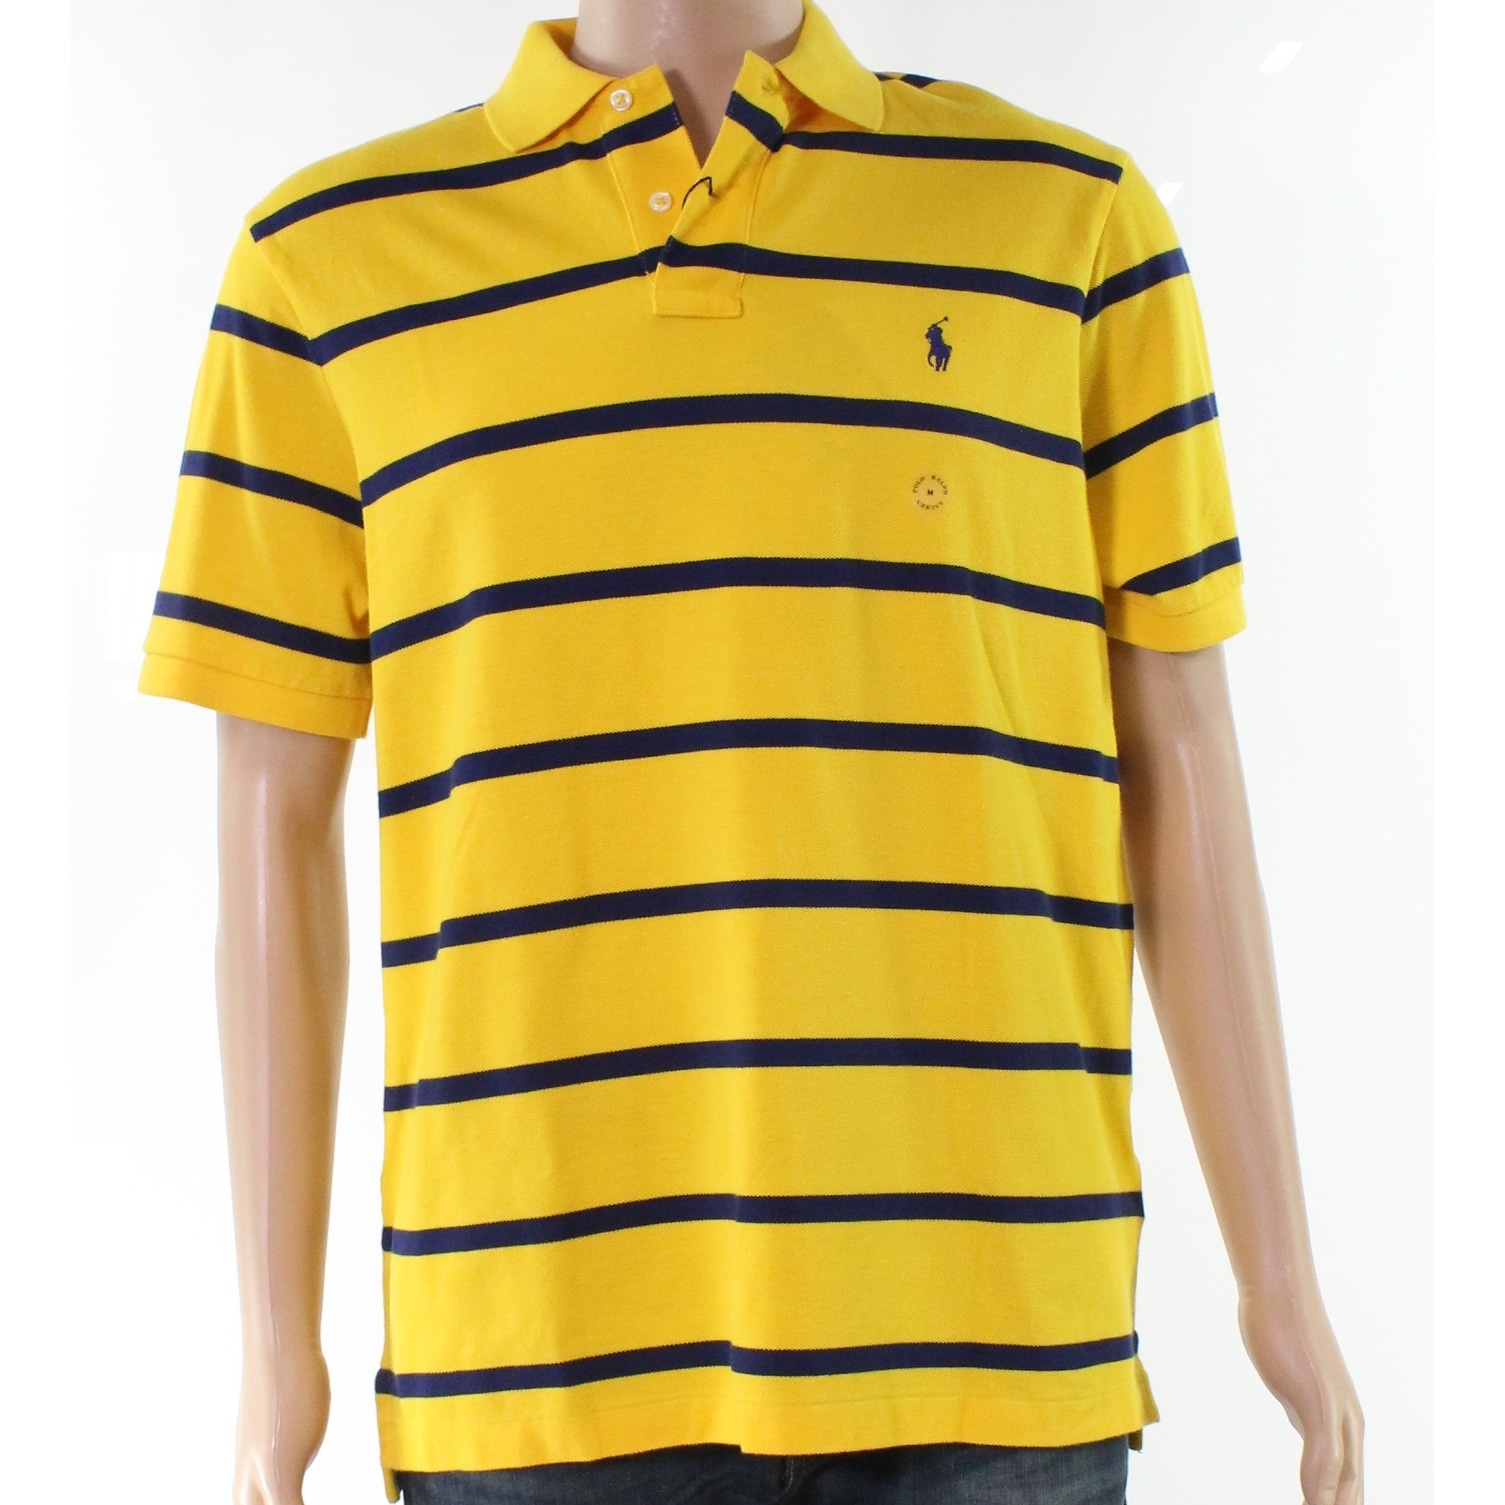 ralph lauren yellow striped shirt